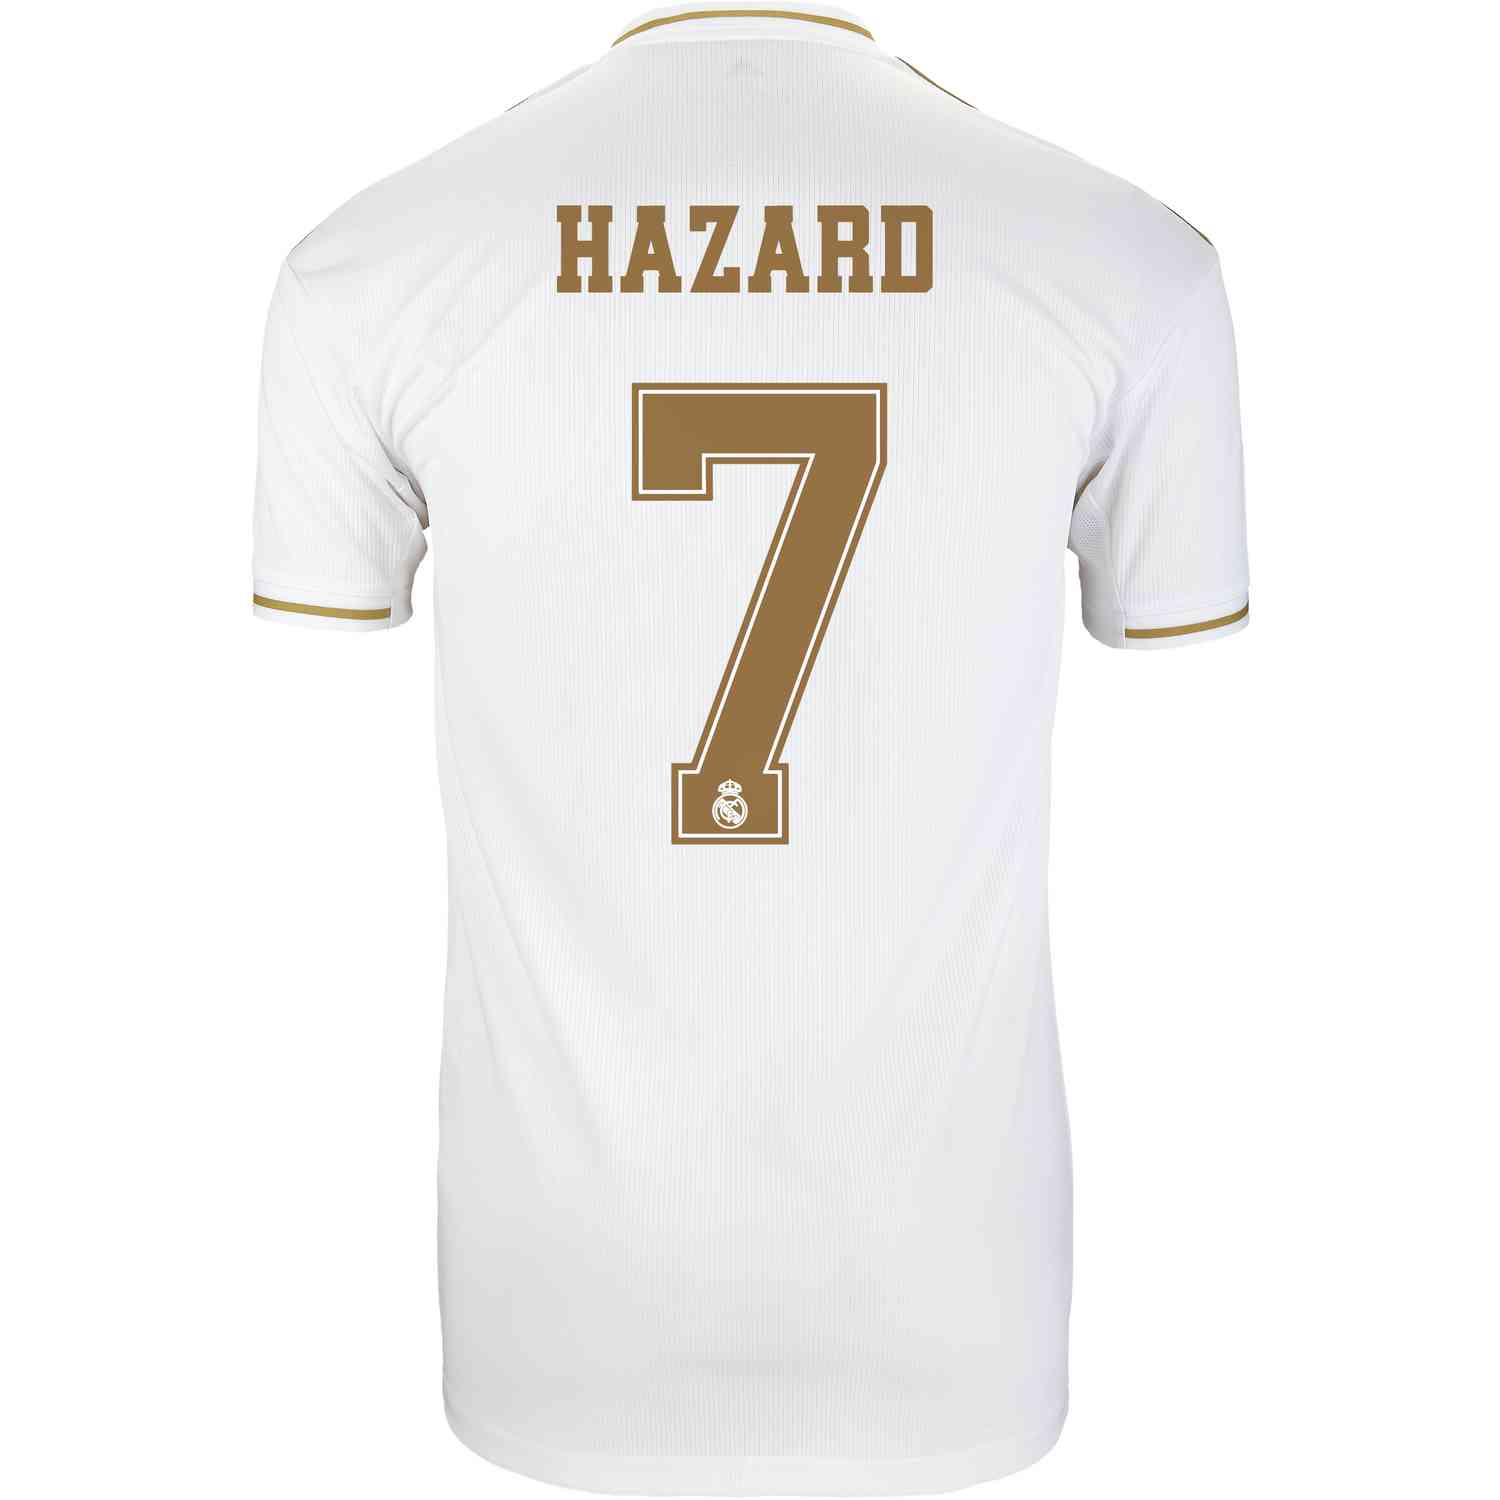 2019/20 Eden Hazard Real Madrid Home 